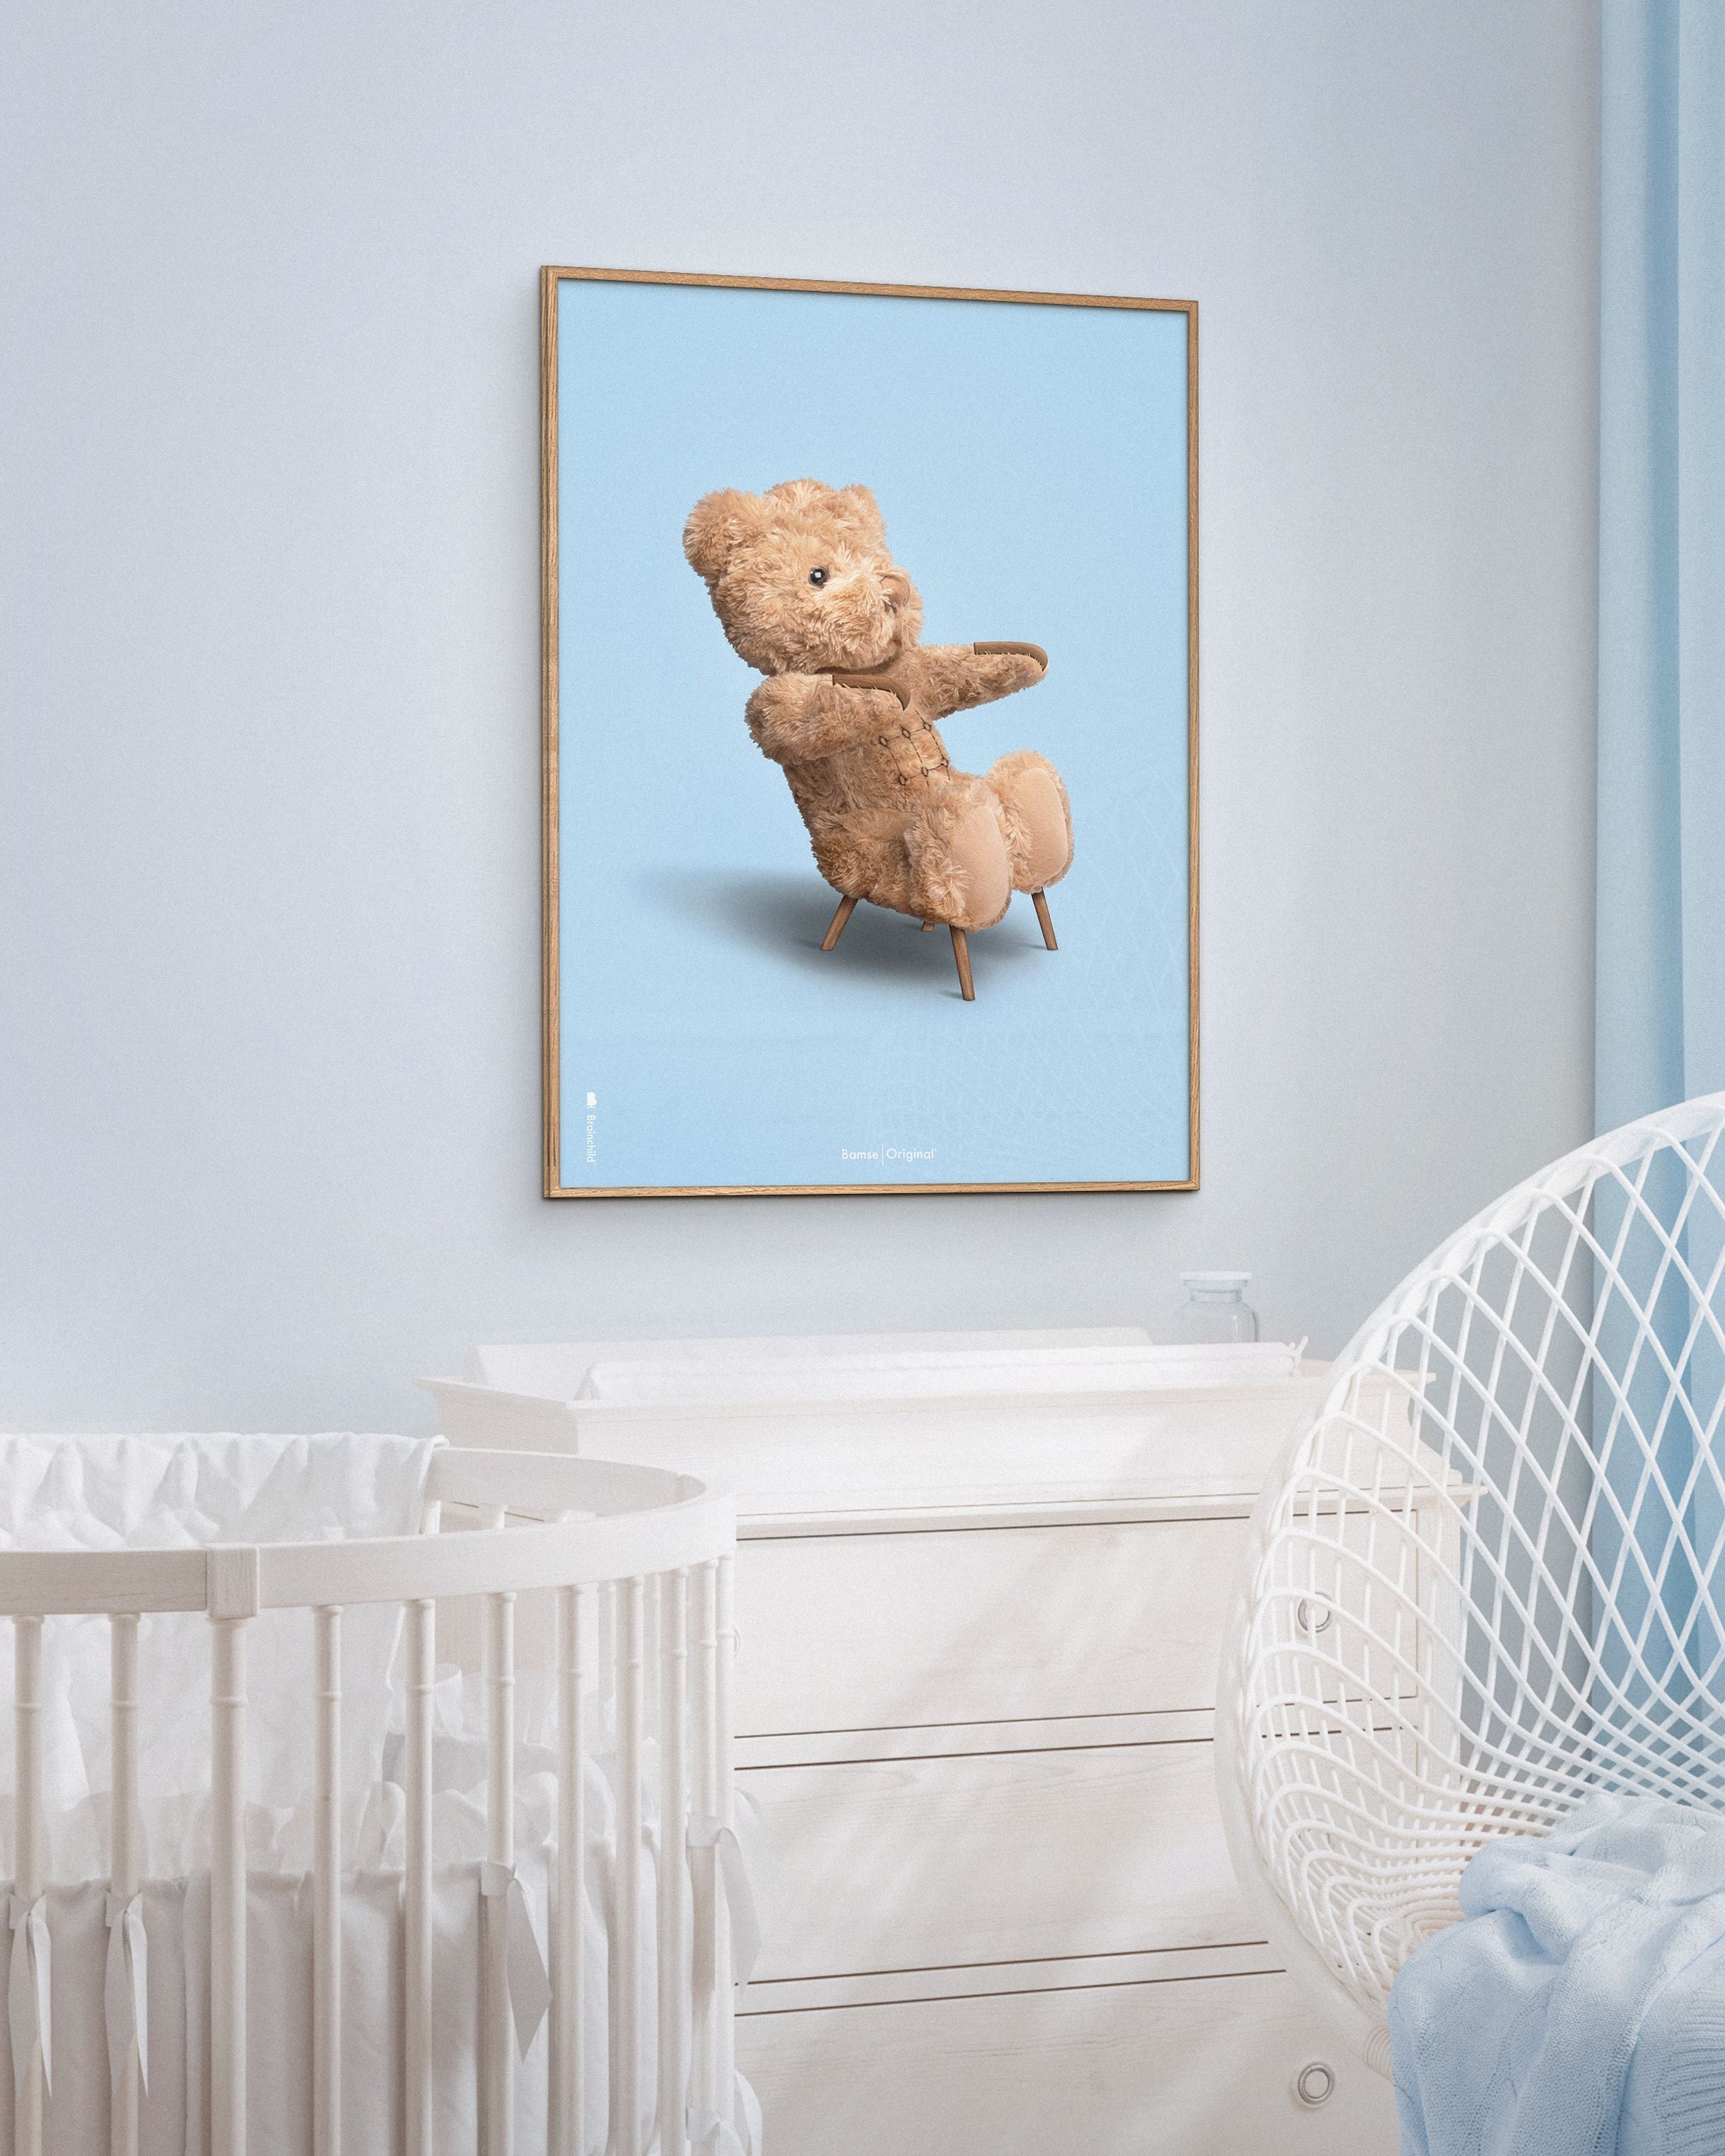 Brainchild Teddy Bear Classic plakát mosazný barevný rám 70x100 cm, světle modré pozadí